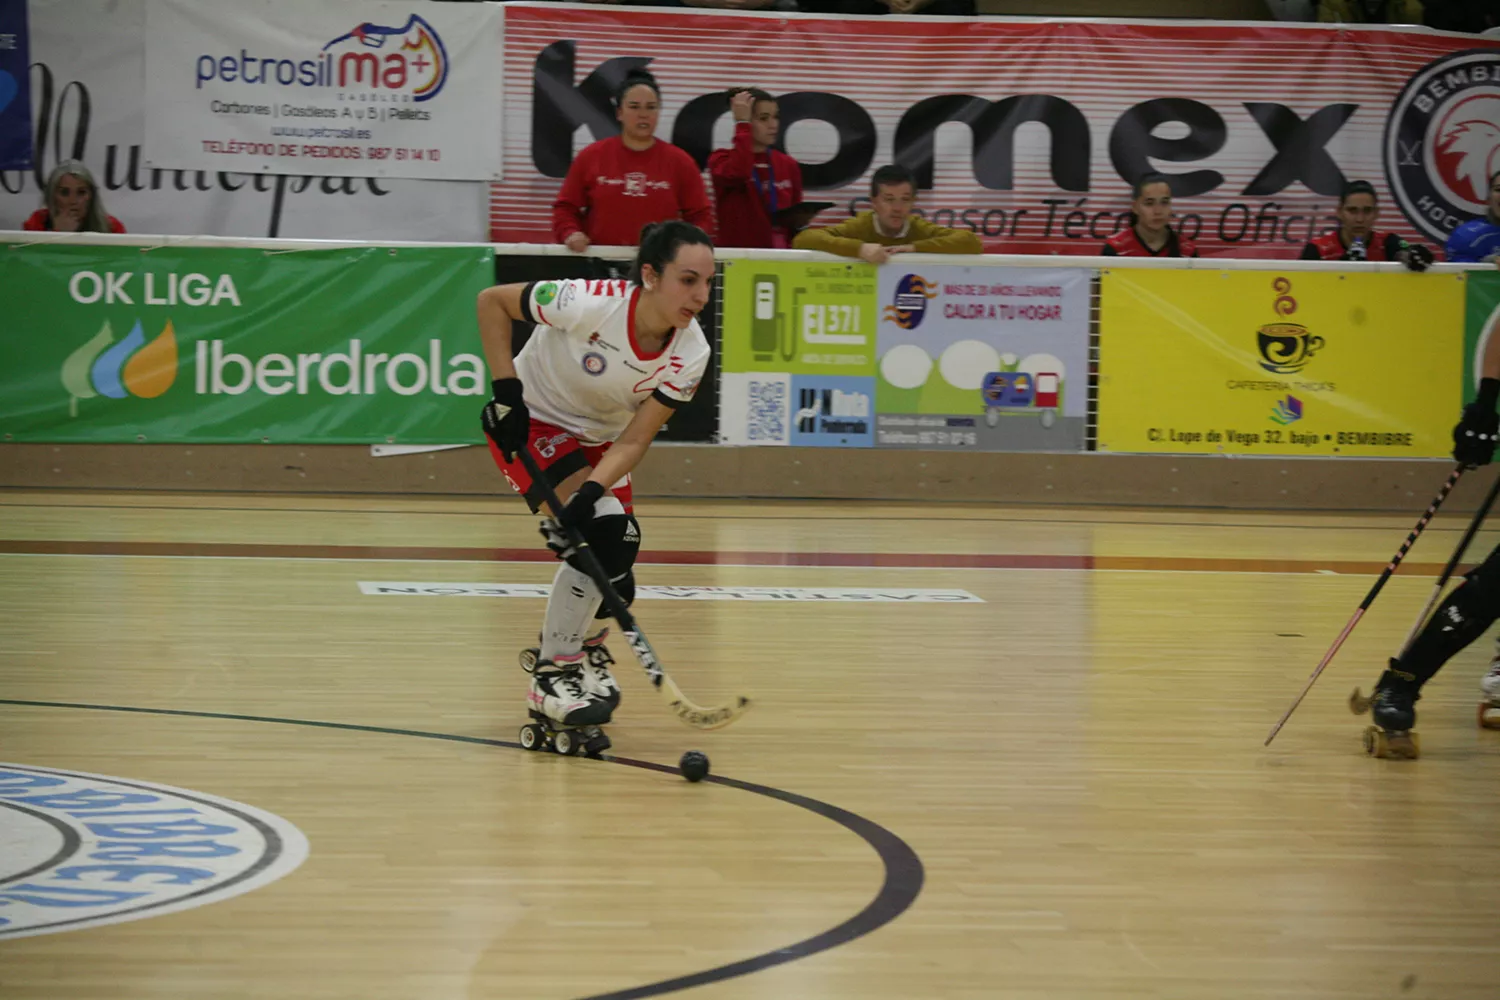 Bembibre Hockey Club, un digno contrincante ante el “campeonísimo” Telecable de Gijón 2